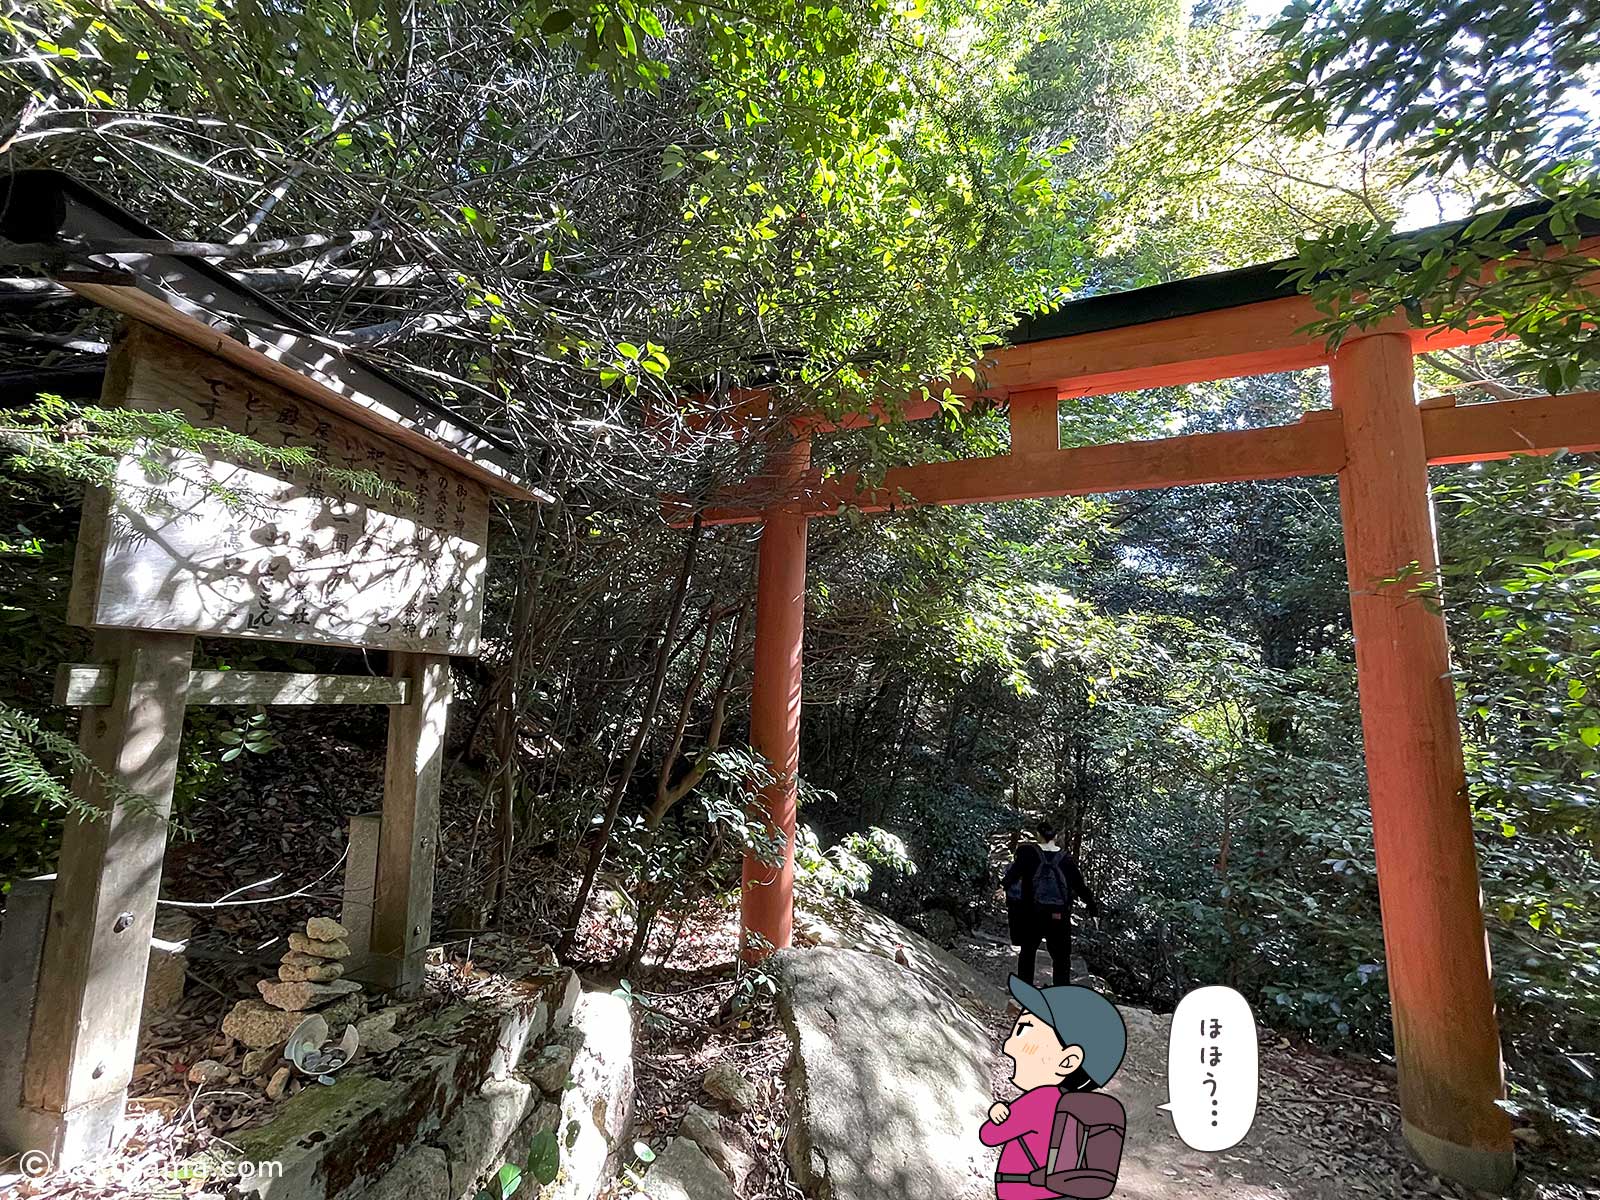 御山神社二の鳥居の写真と登山者のイラスト